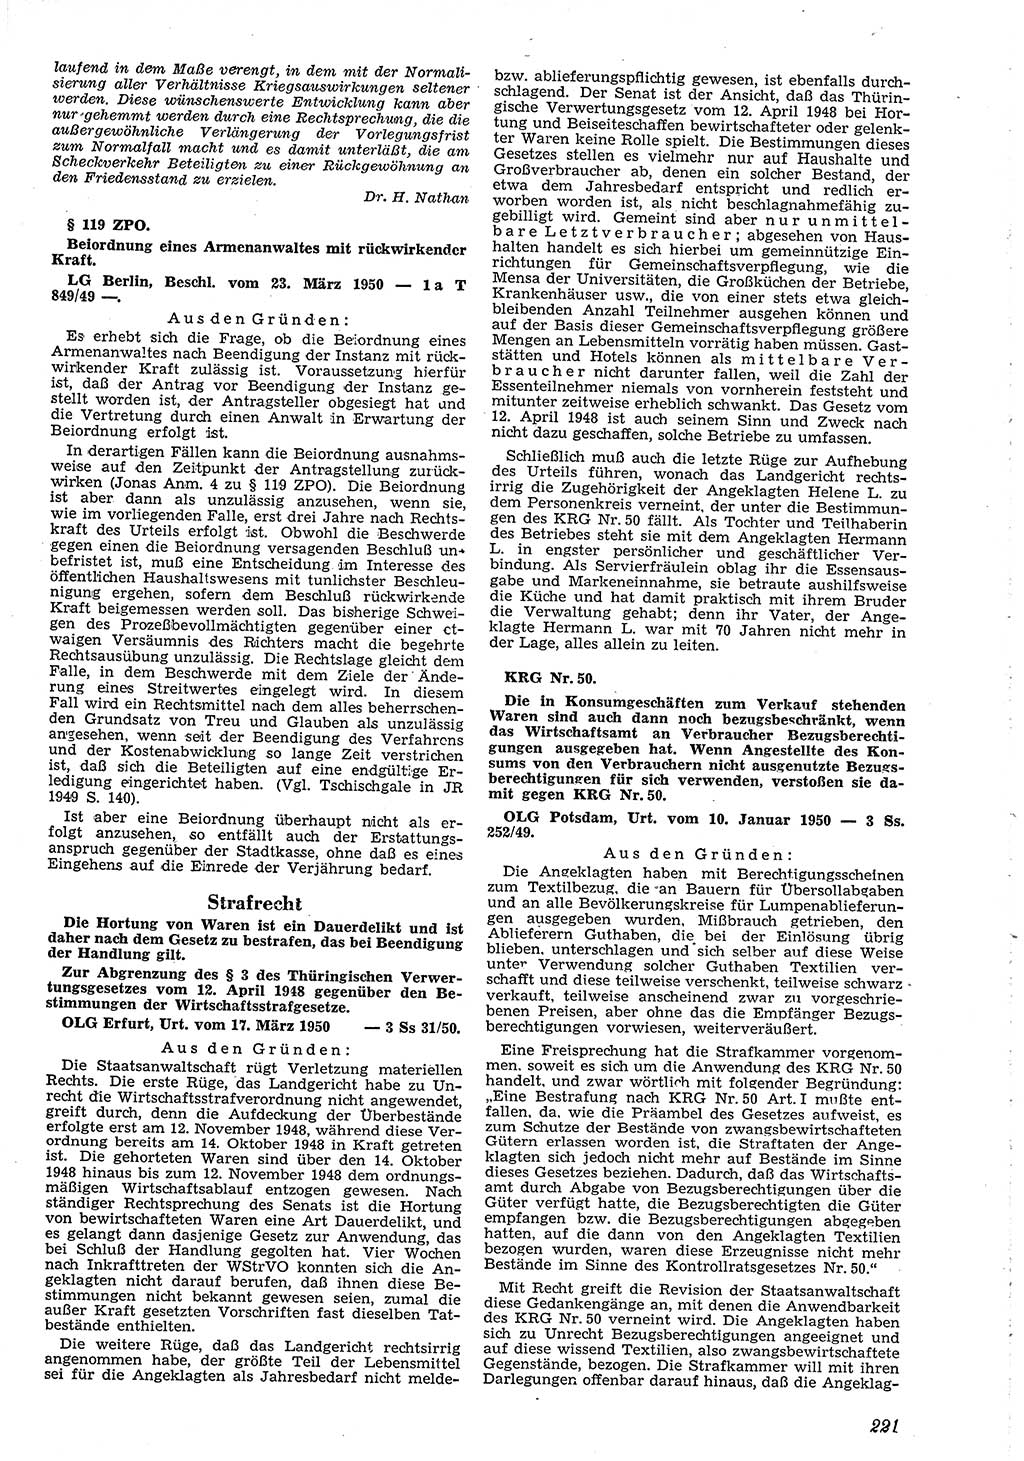 Neue Justiz (NJ), Zeitschrift für Recht und Rechtswissenschaft [Deutsche Demokratische Republik (DDR)], 4. Jahrgang 1950, Seite 221 (NJ DDR 1950, S. 221)